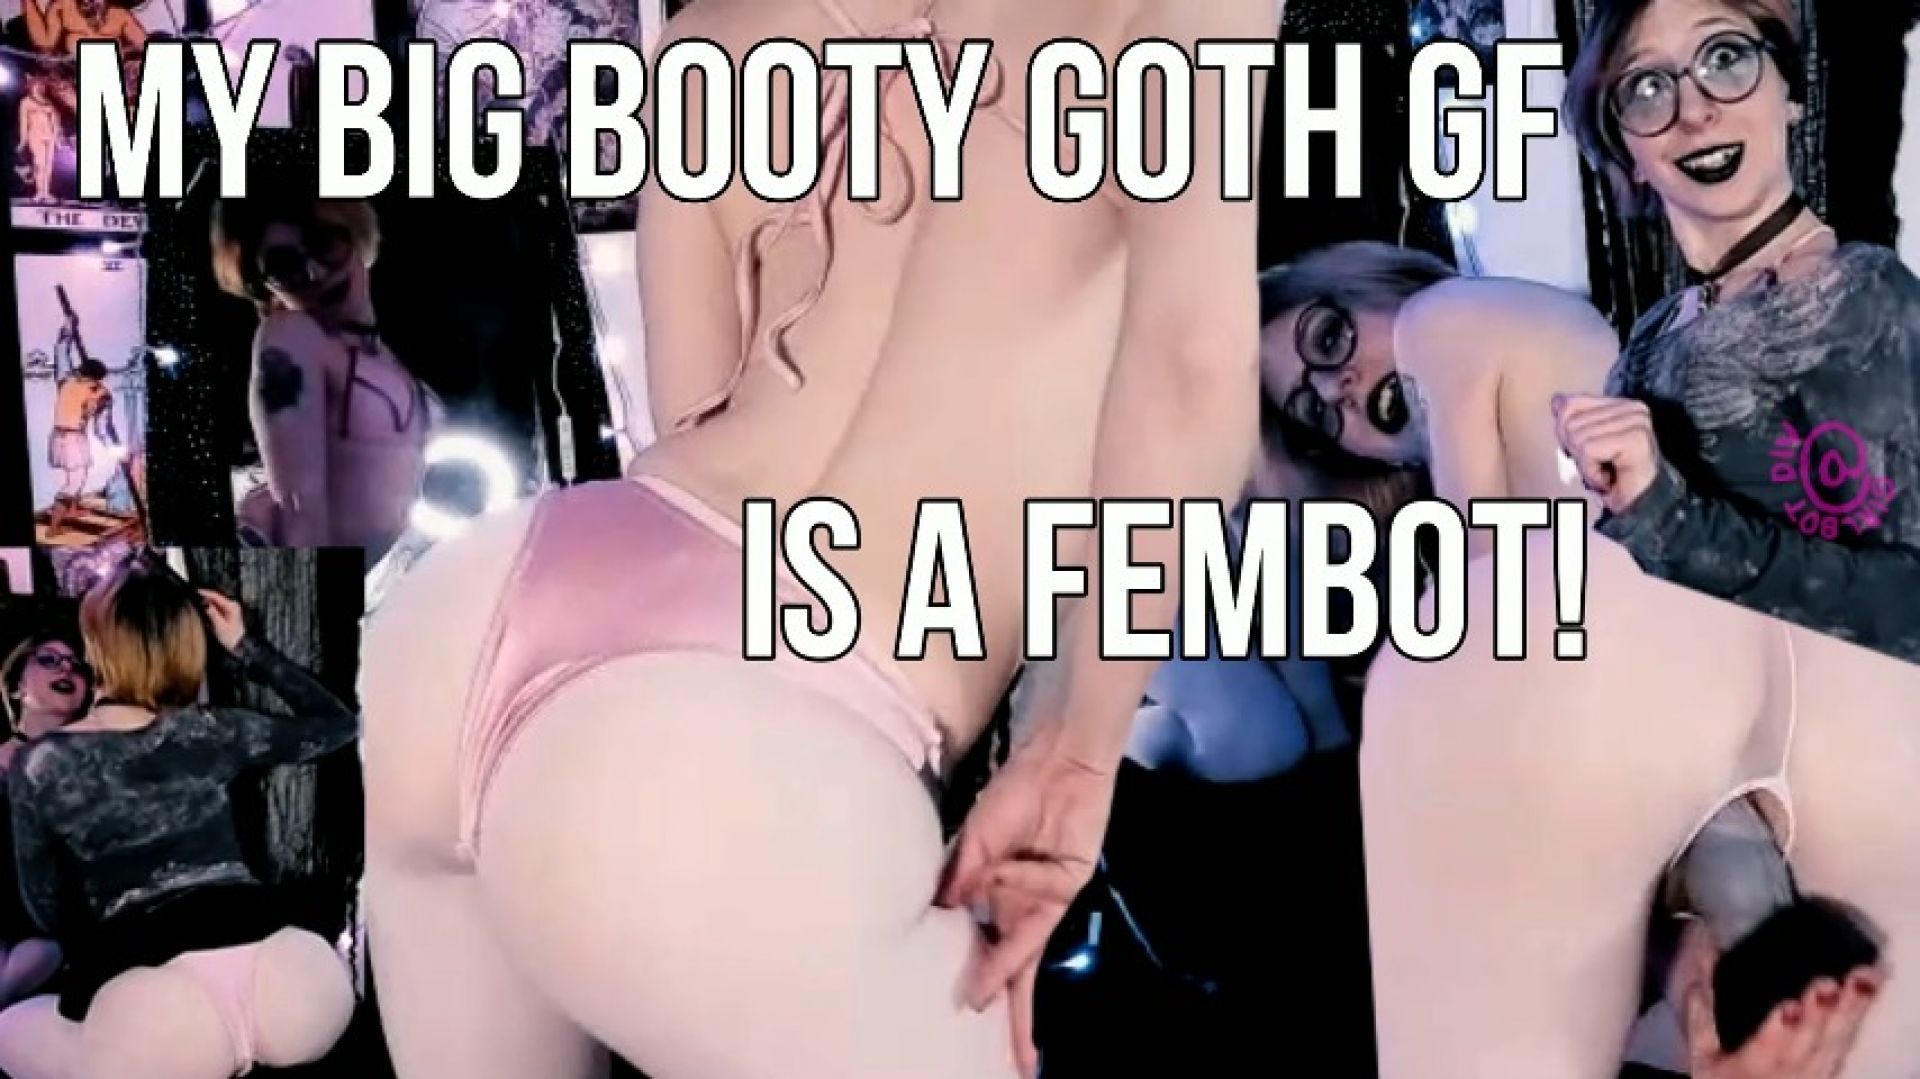 My Big Booty Goth GF is a Fembot